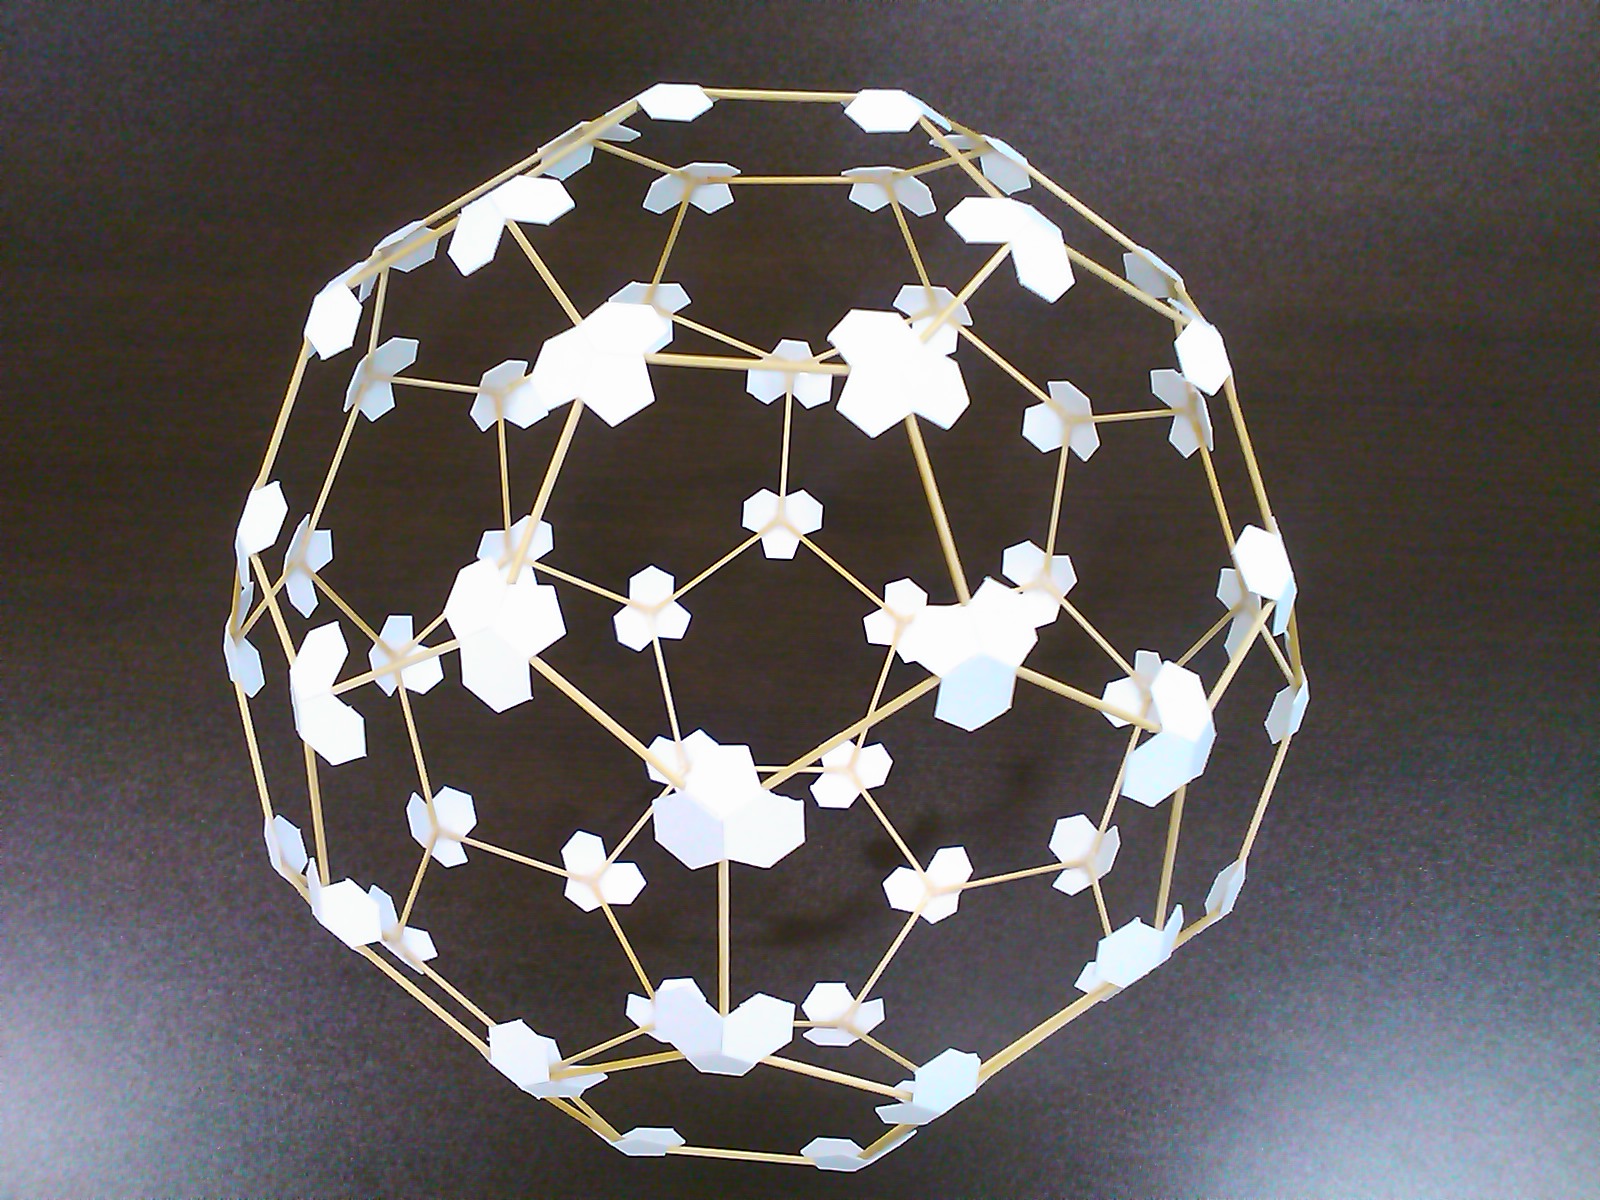 竹ひごで作った32面体 サッカーボール。切頂20面体とも。アルキメデスの立体のひとつ